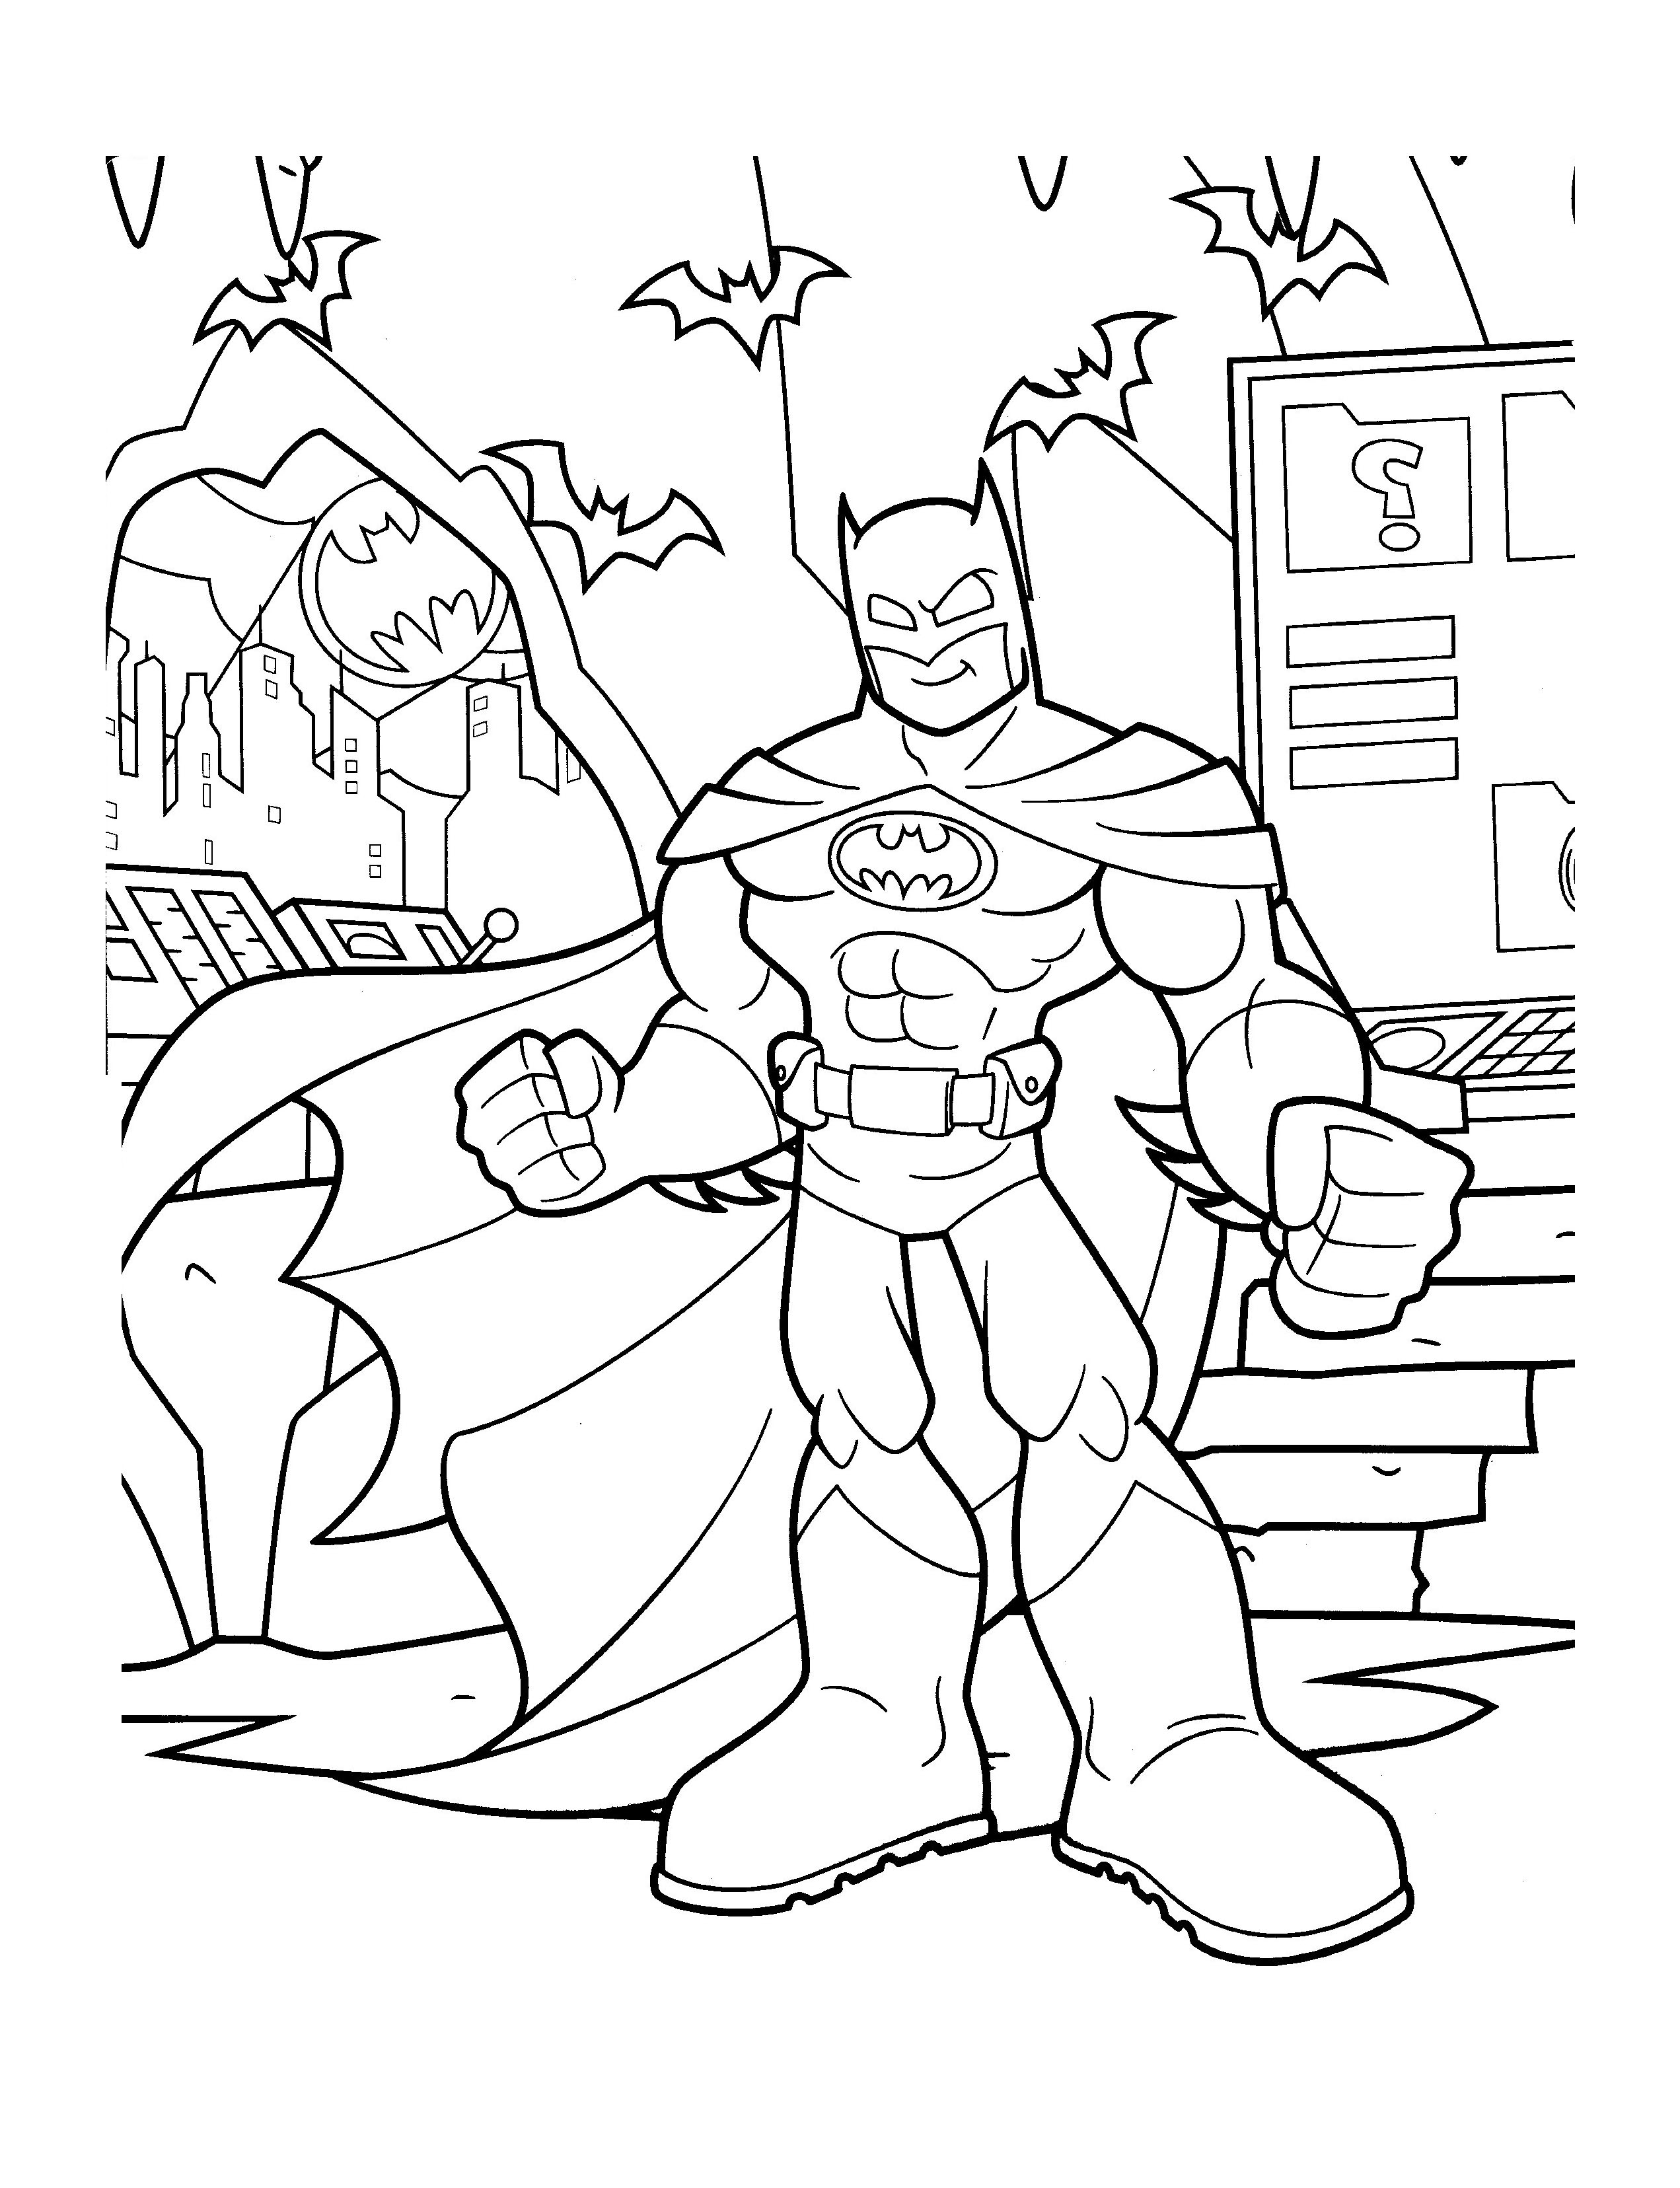 Batman coloring pages to download Batman Kids Coloring Pages